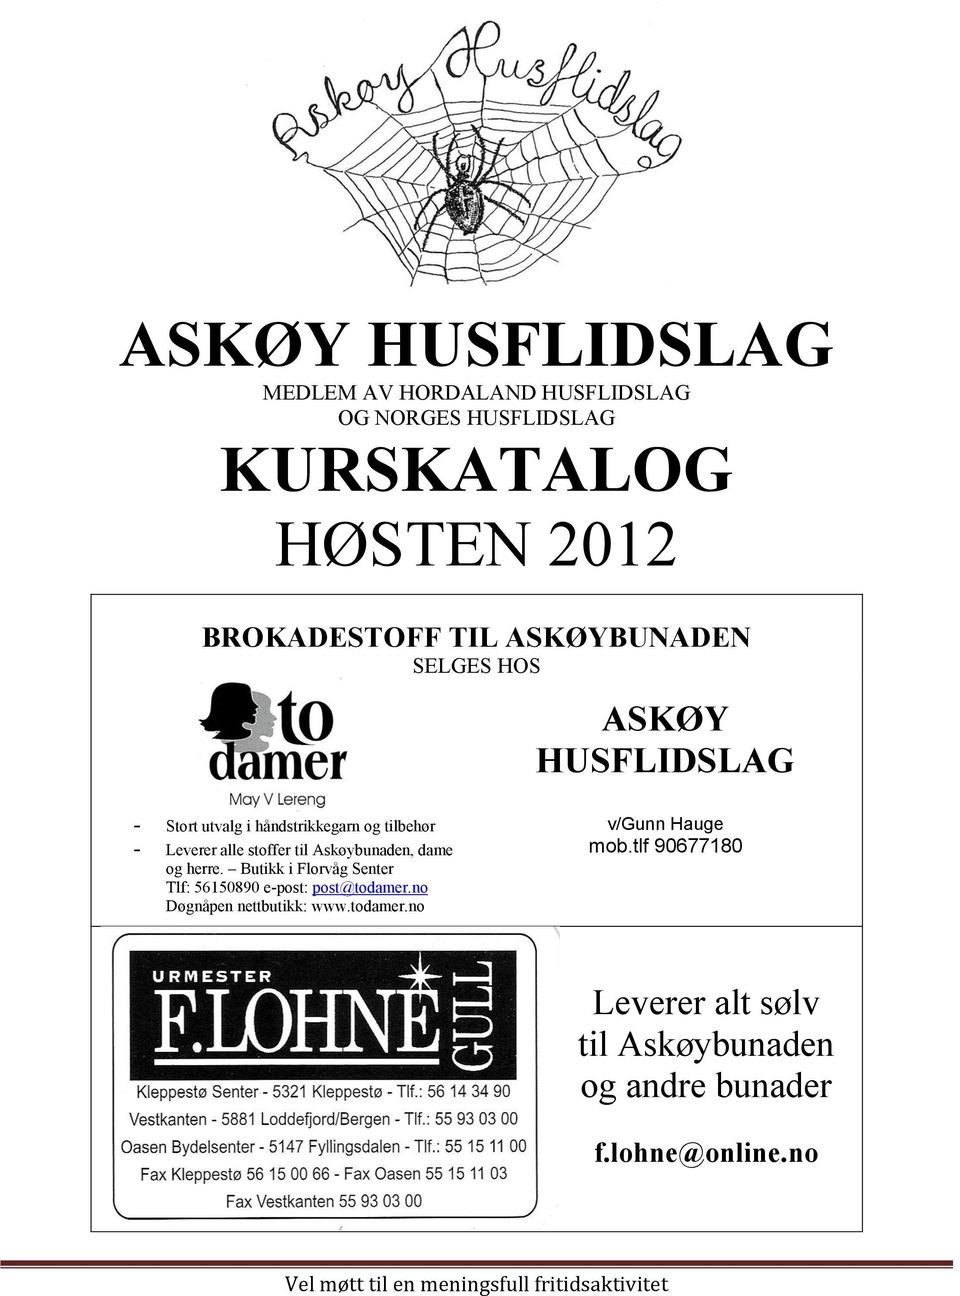 Askøybunaden, dame og herre. Butikk i Florvåg Senter Tlf: 56150890 e-post: post@todamer.no Døgnåpen nettbutikk: www.todamer.no v/gunn Hauge mob.